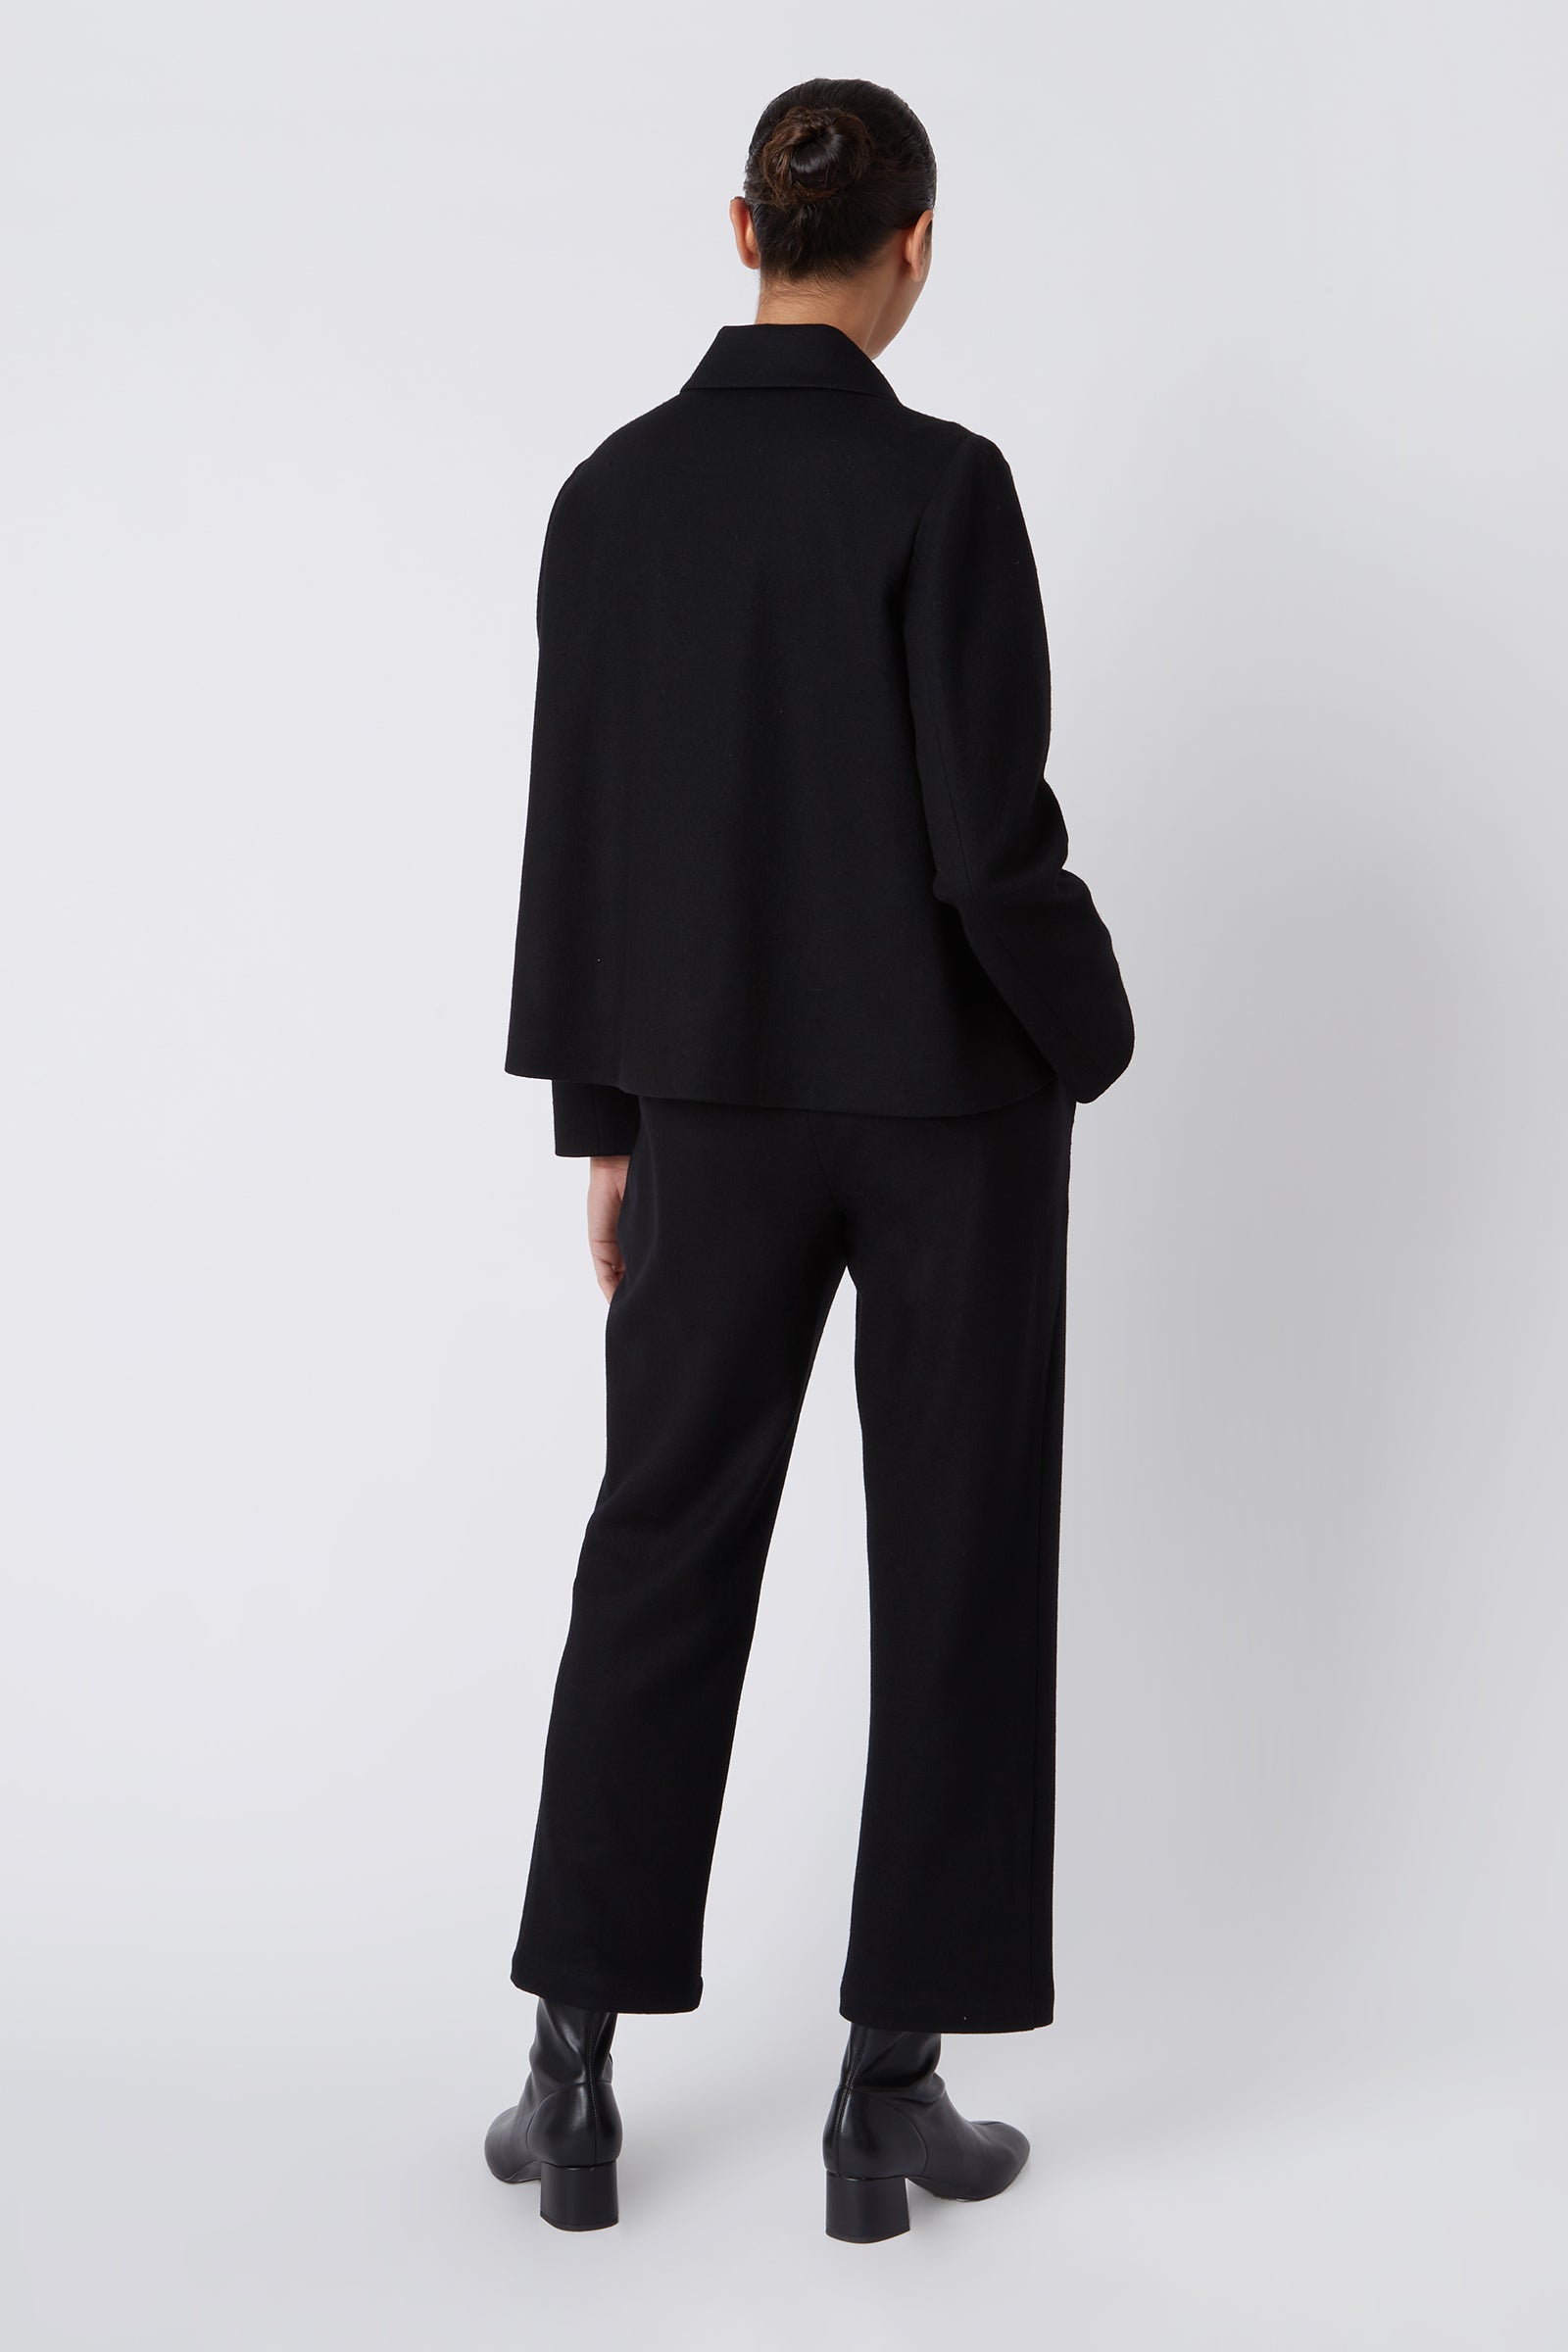 Kal Rieman Sylvie FJ Swing Jacket in Black Felted Jersey on Model Full Back View